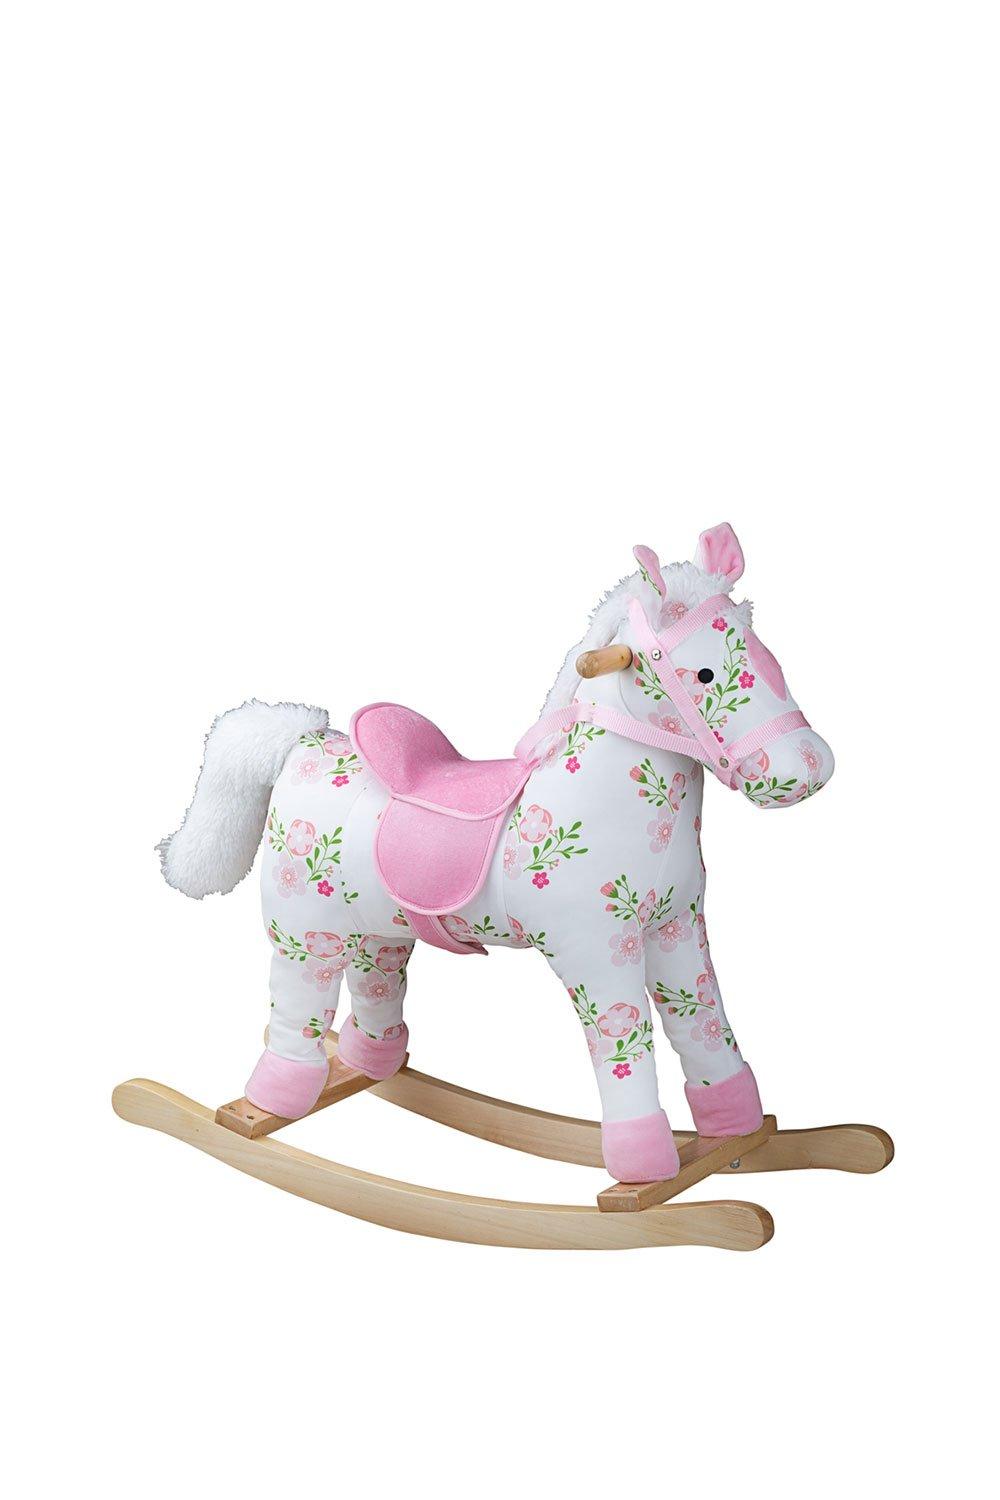 Bigjigs Toys 'Floral' Rocking Horse|pink